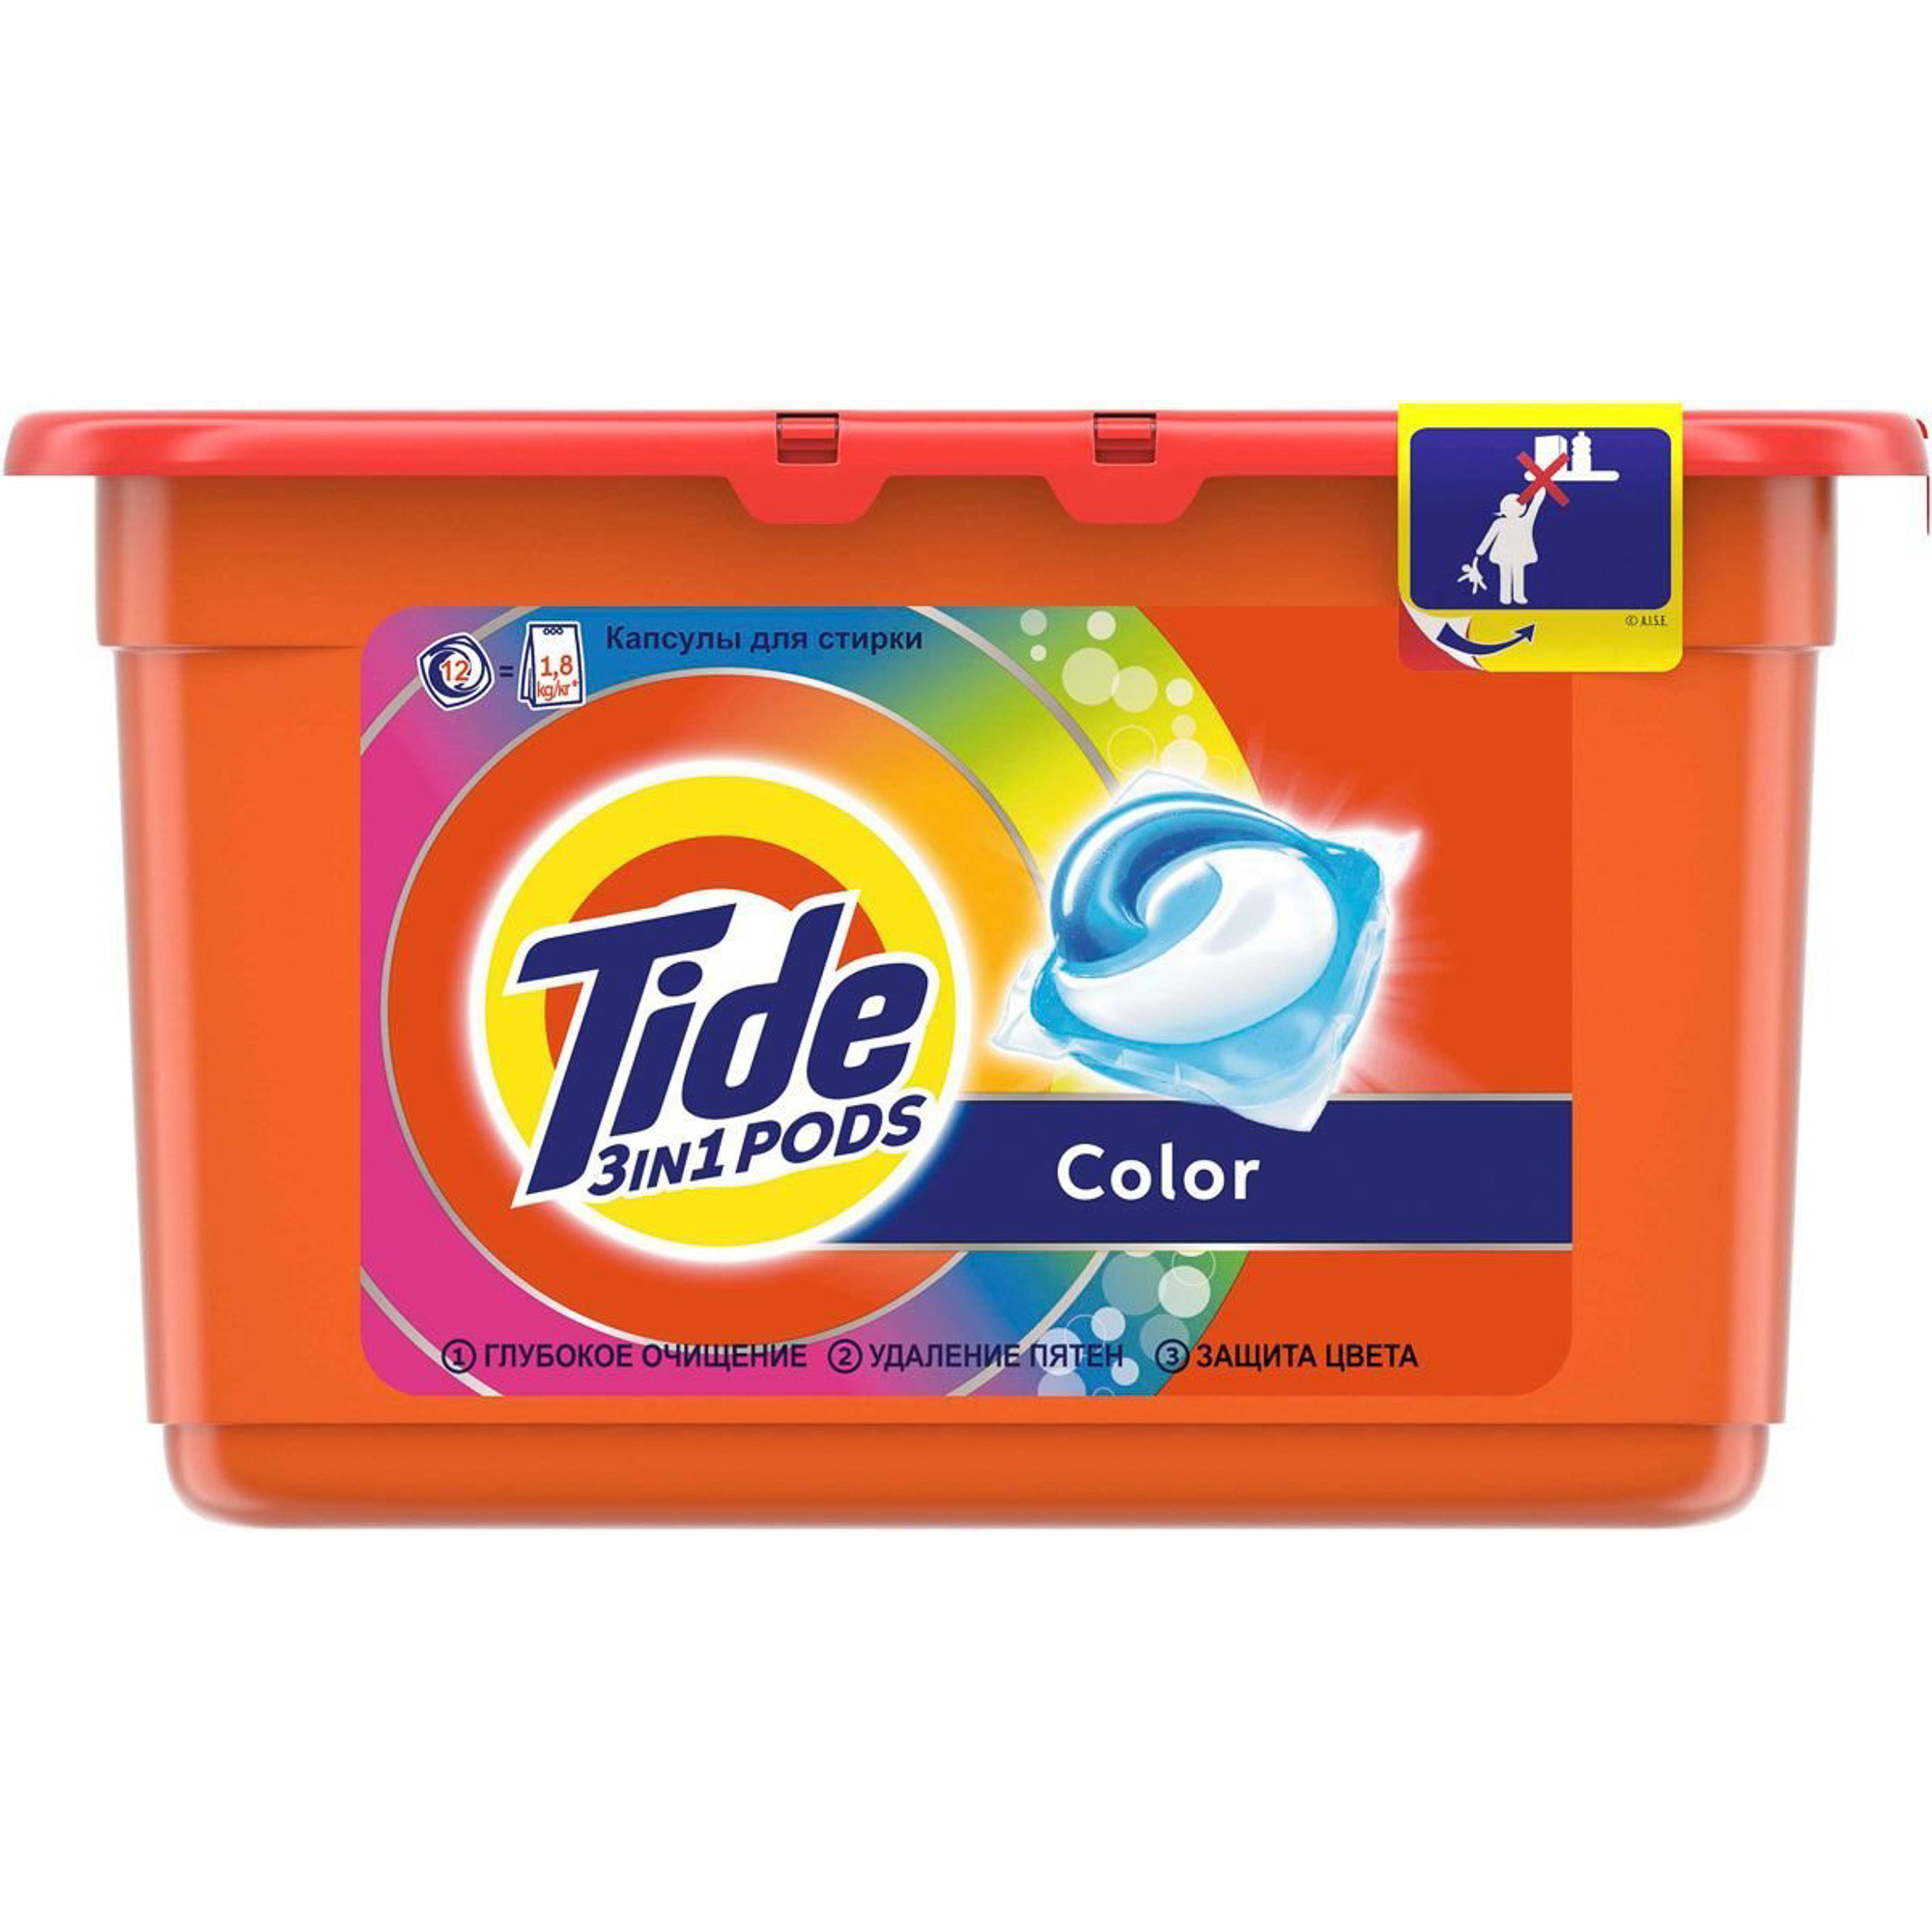 Капсулы для стирки Tide 3 в 1 Pods Color 12 шт